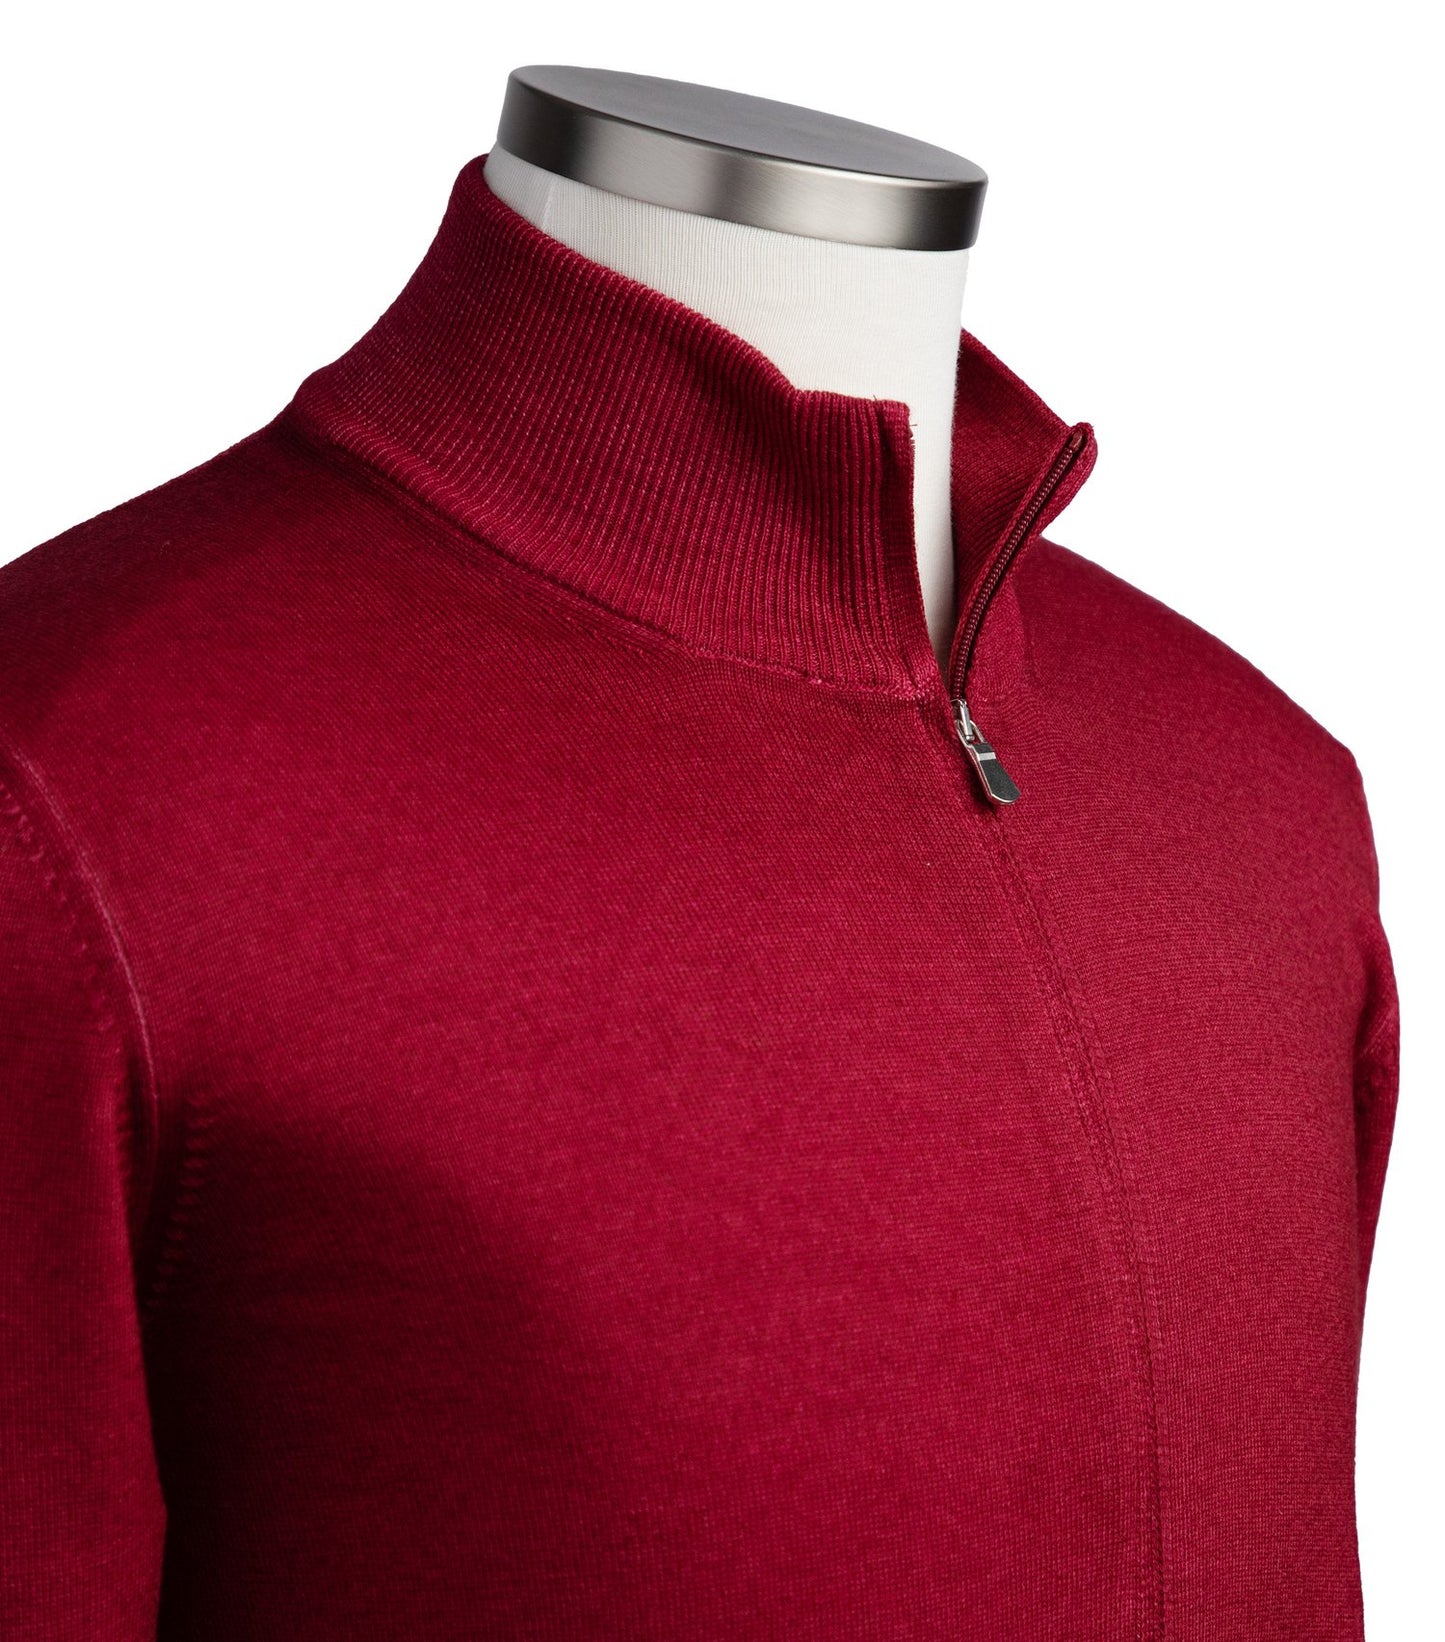 Gran Sasso Merino Wool Full-Zip Sweater in Raspberry